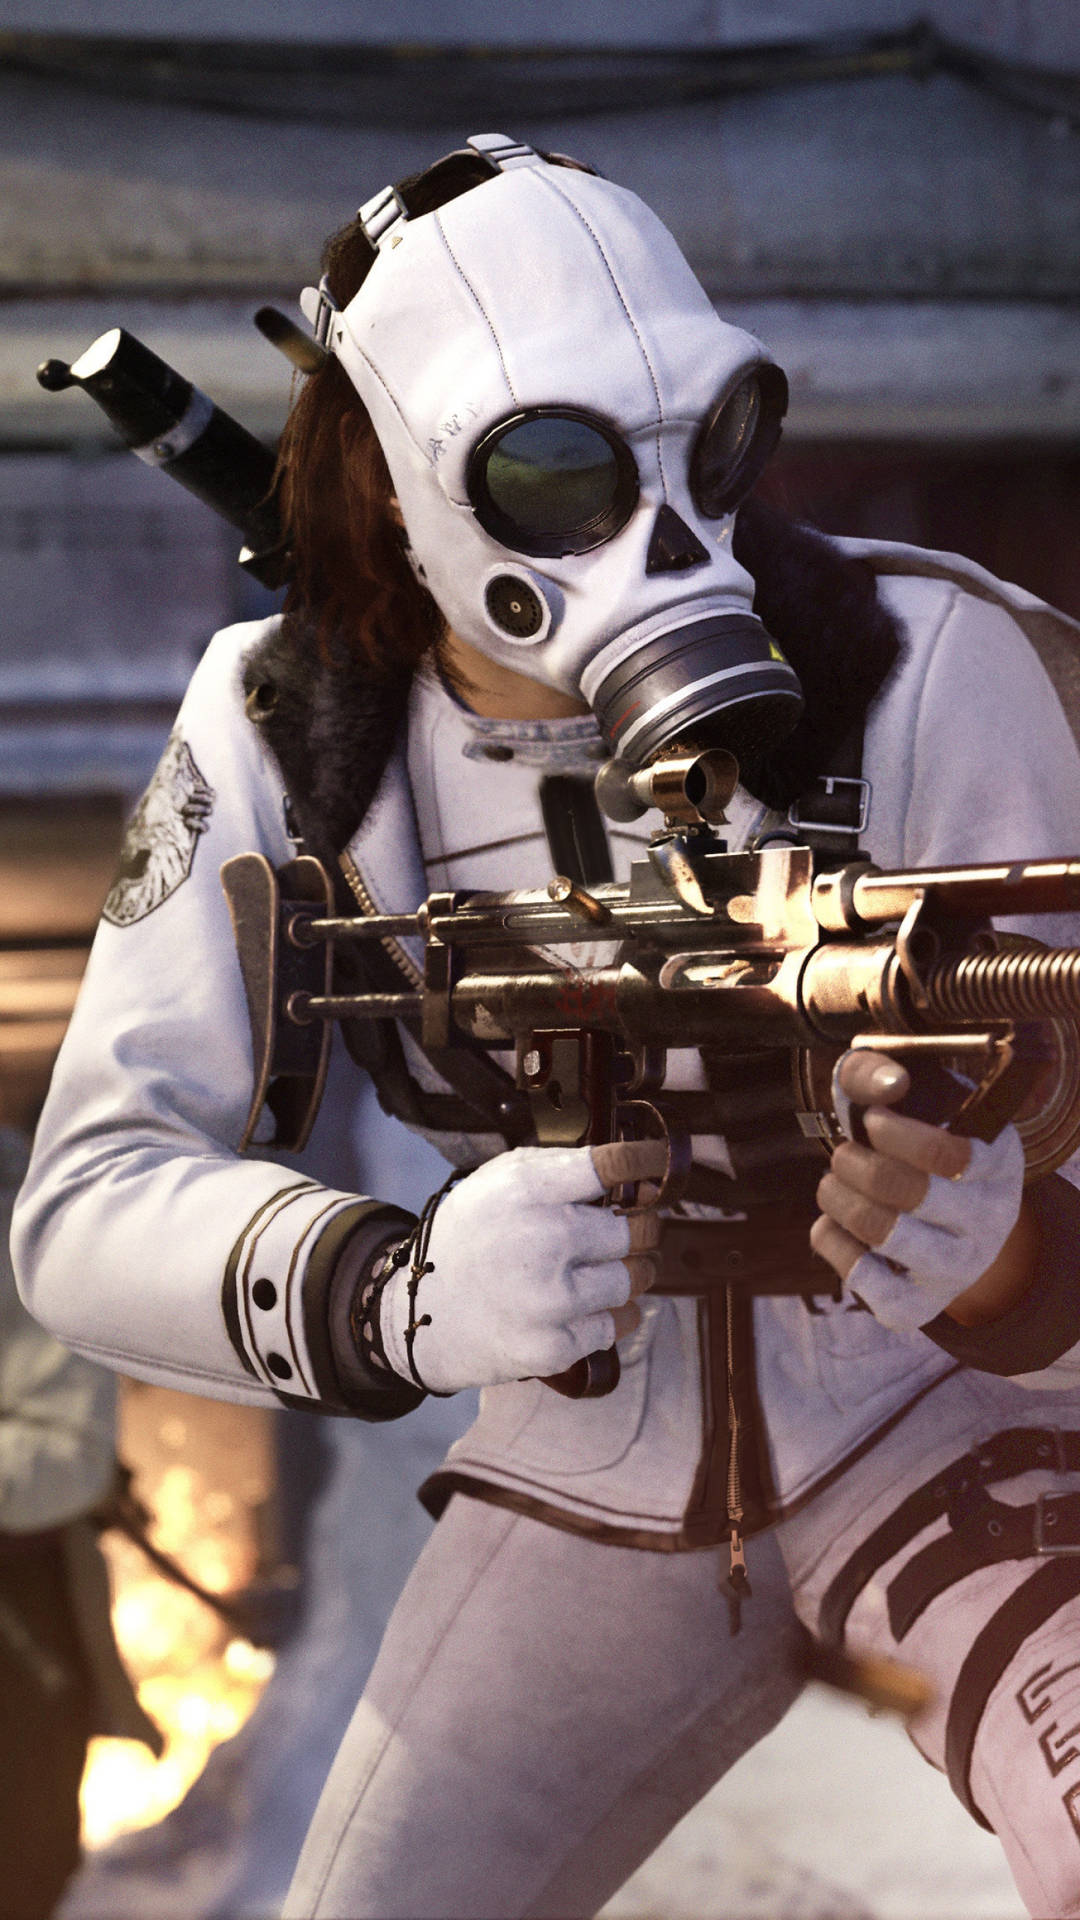 Ritrattocon Maschera Antigas Di Call Of Duty Vanguard. Sfondo